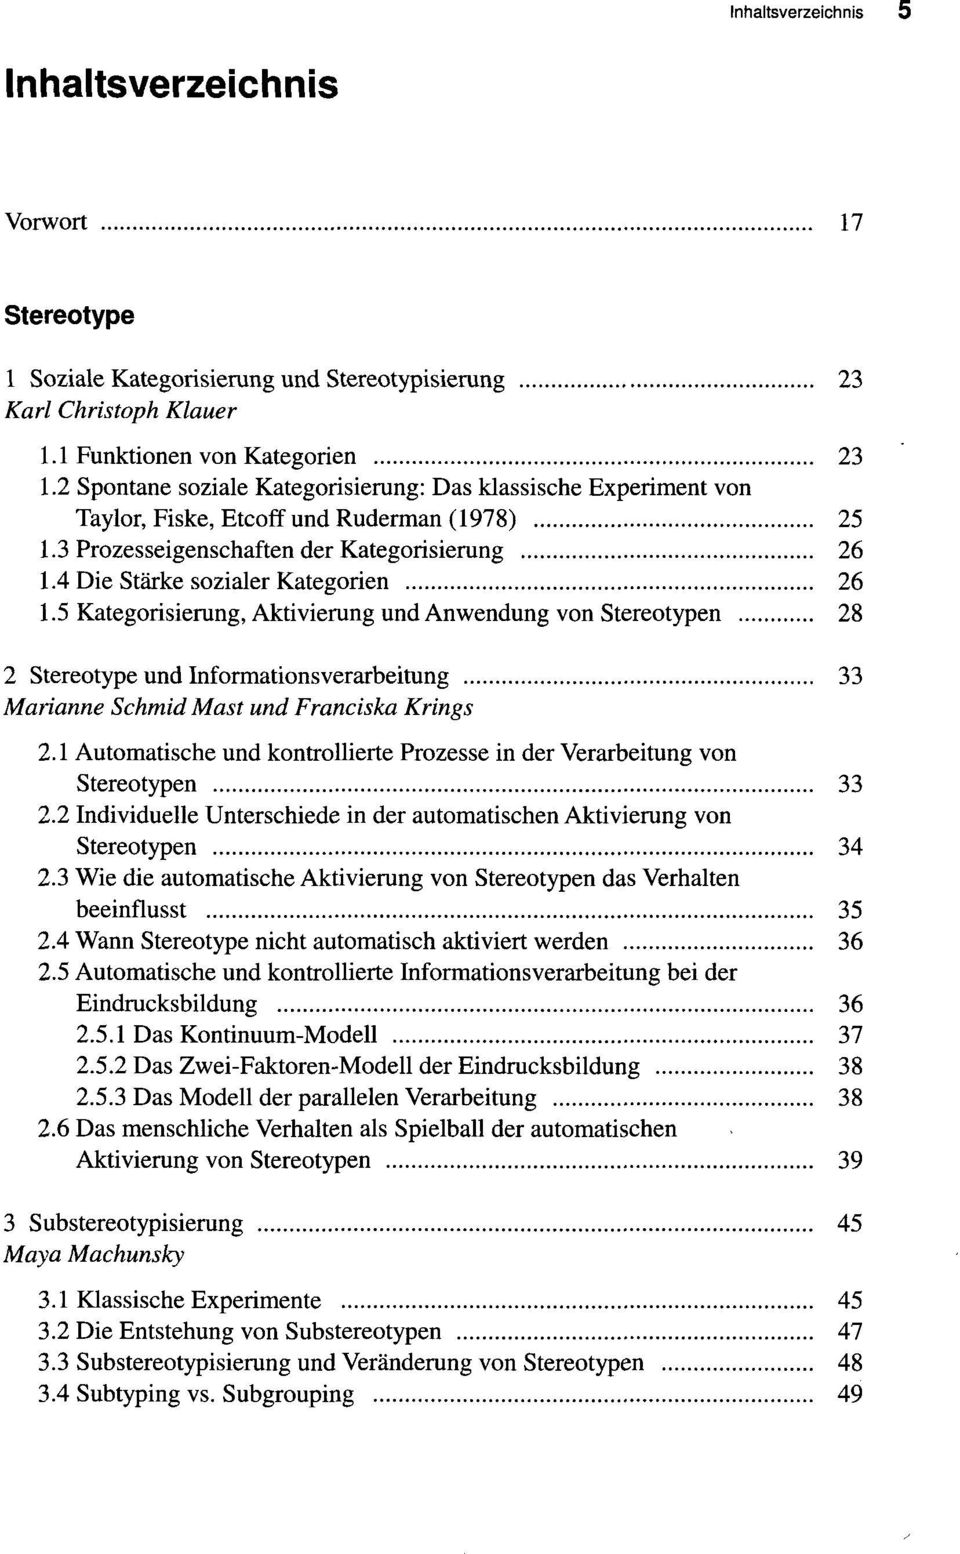 5 Kategorisierung, Aktivierung und Anwendung von Stereotypen 28 2 Stereotype und Informationsverarbeitung 33 Marianne Schmid Mast und Franciska Krings 2.